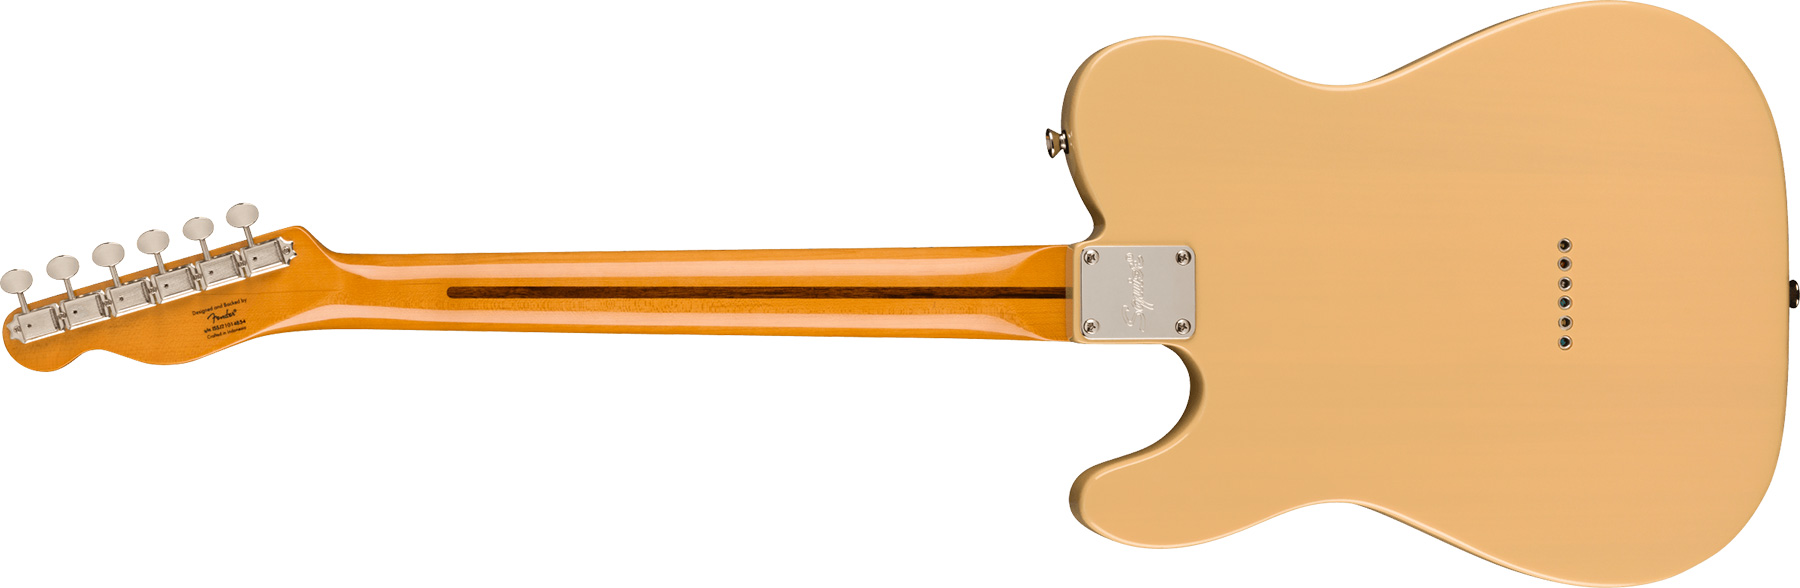 Squier Tele '50s Parchment Pickguard Classic Vibe Fsr 2s Ht Mn - Vintage Blonde - E-Gitarre in Teleform - Variation 1